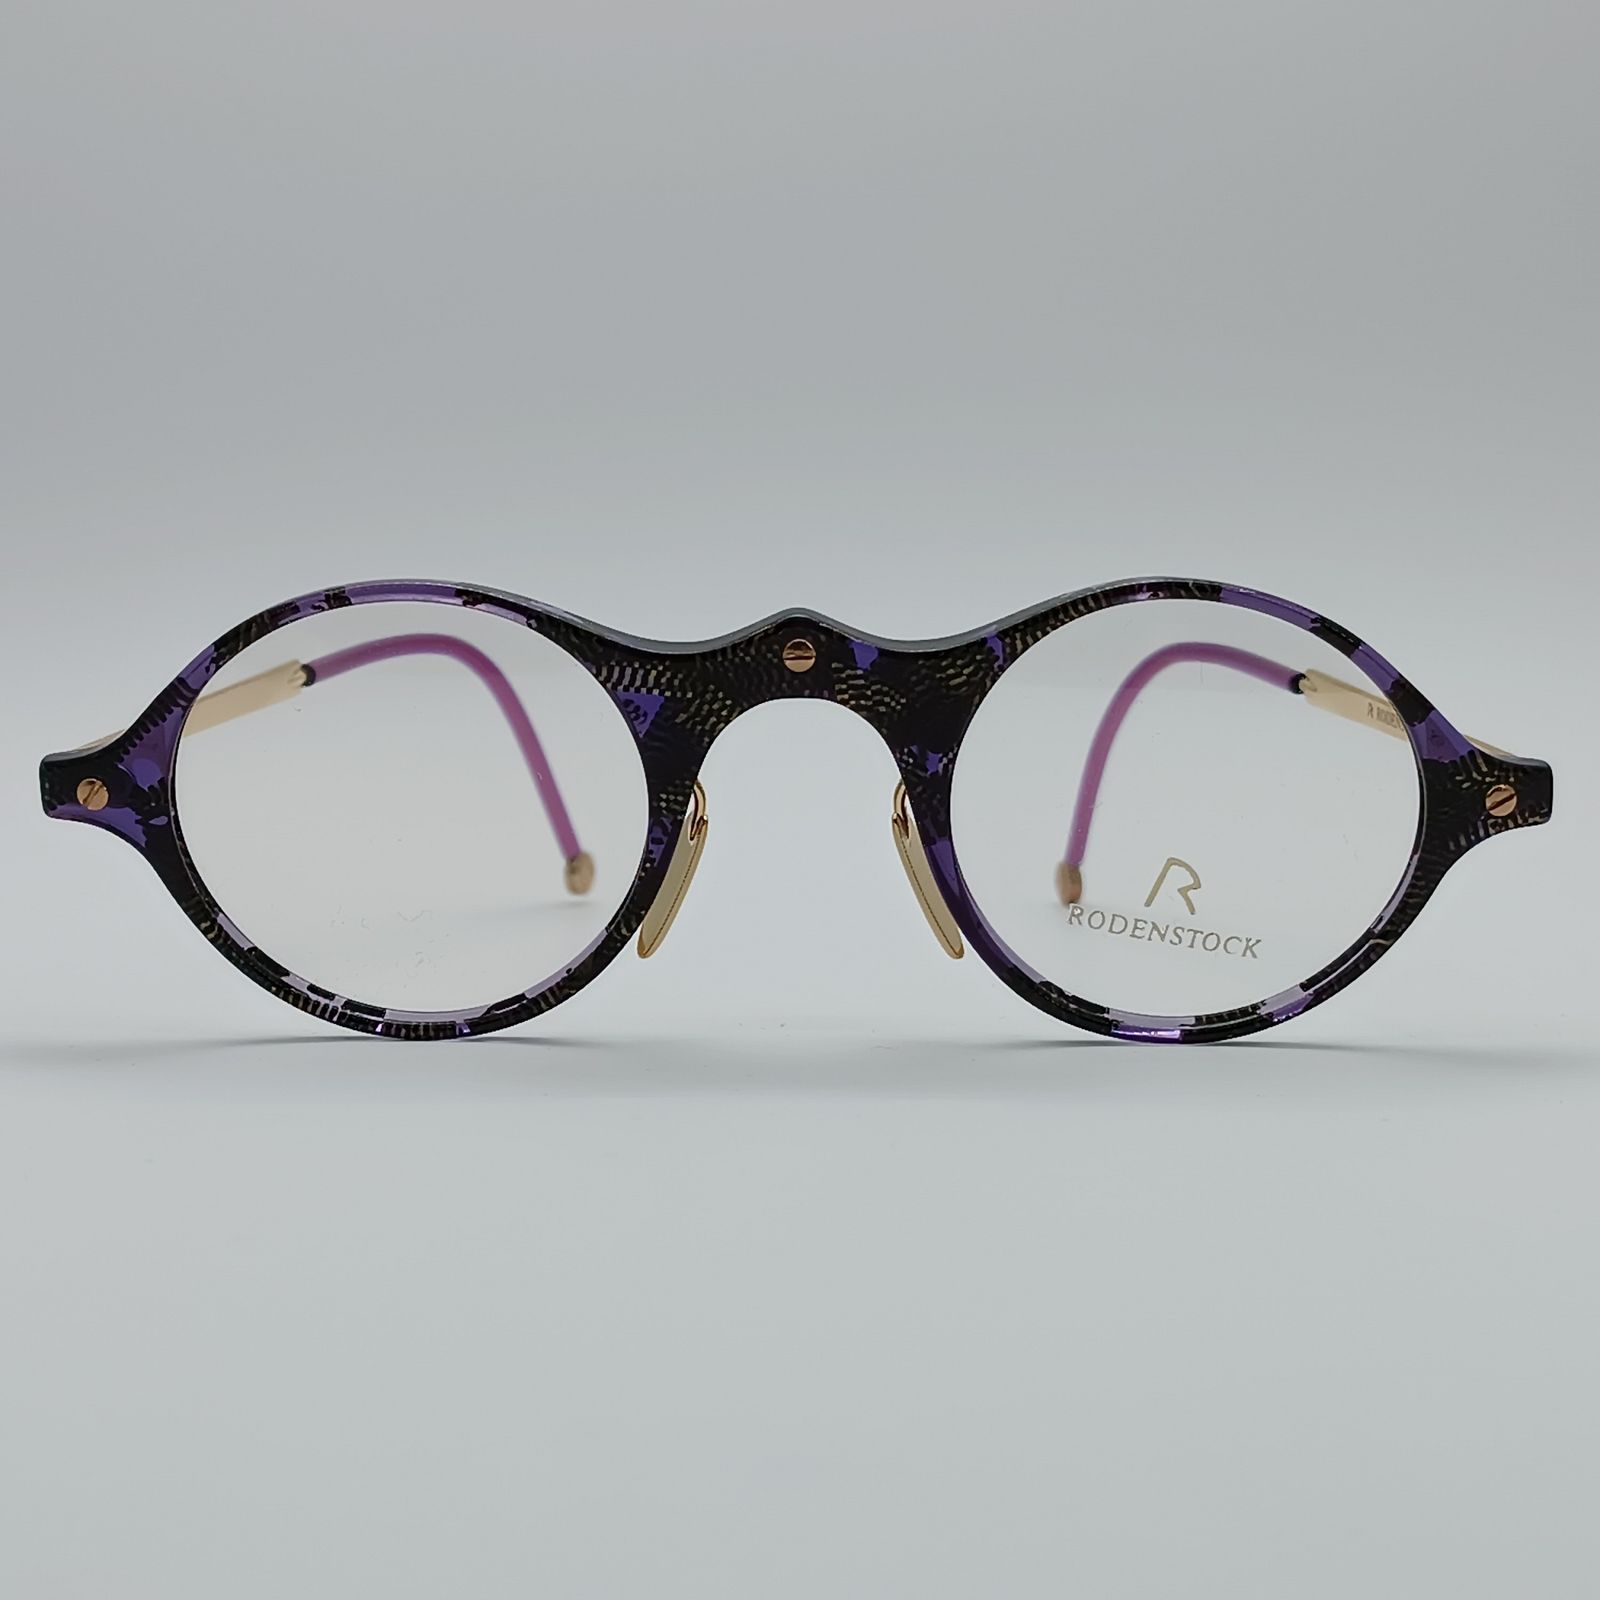 فریم عینک طبی زنانه رودن اشتوک مدل 7102 -  - 2